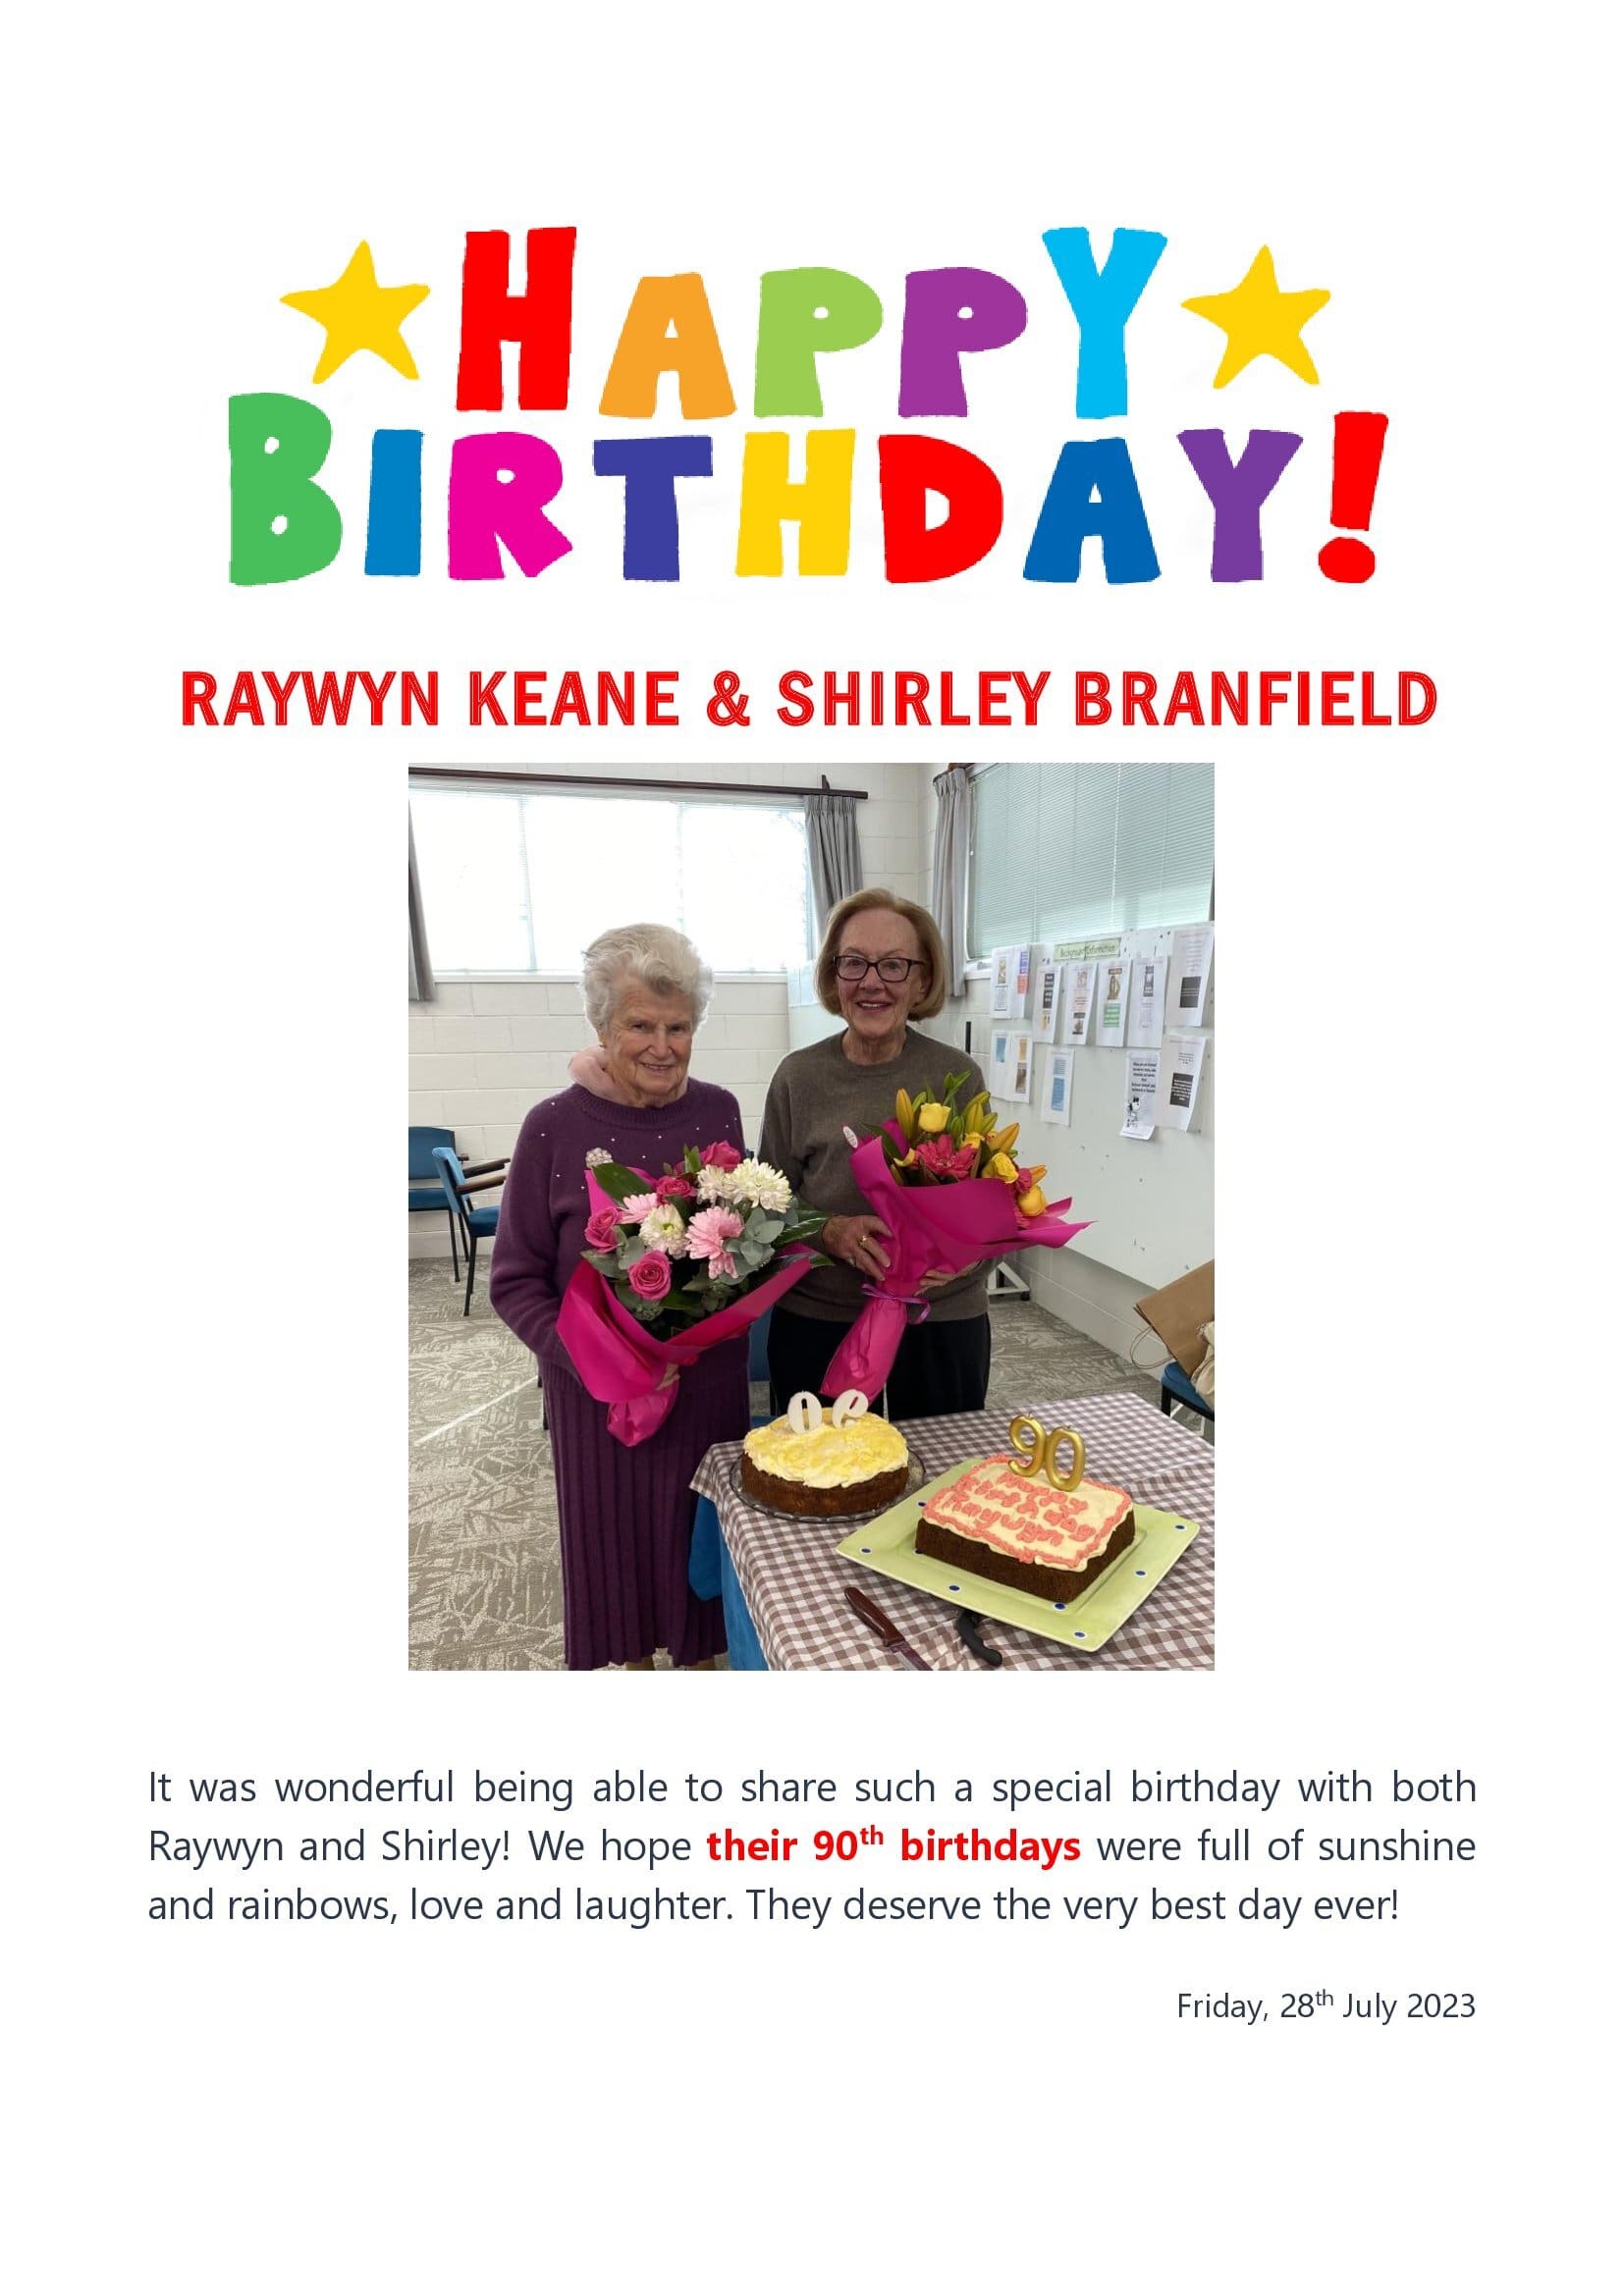 Raywyn and Shirley's 90th birthdays!